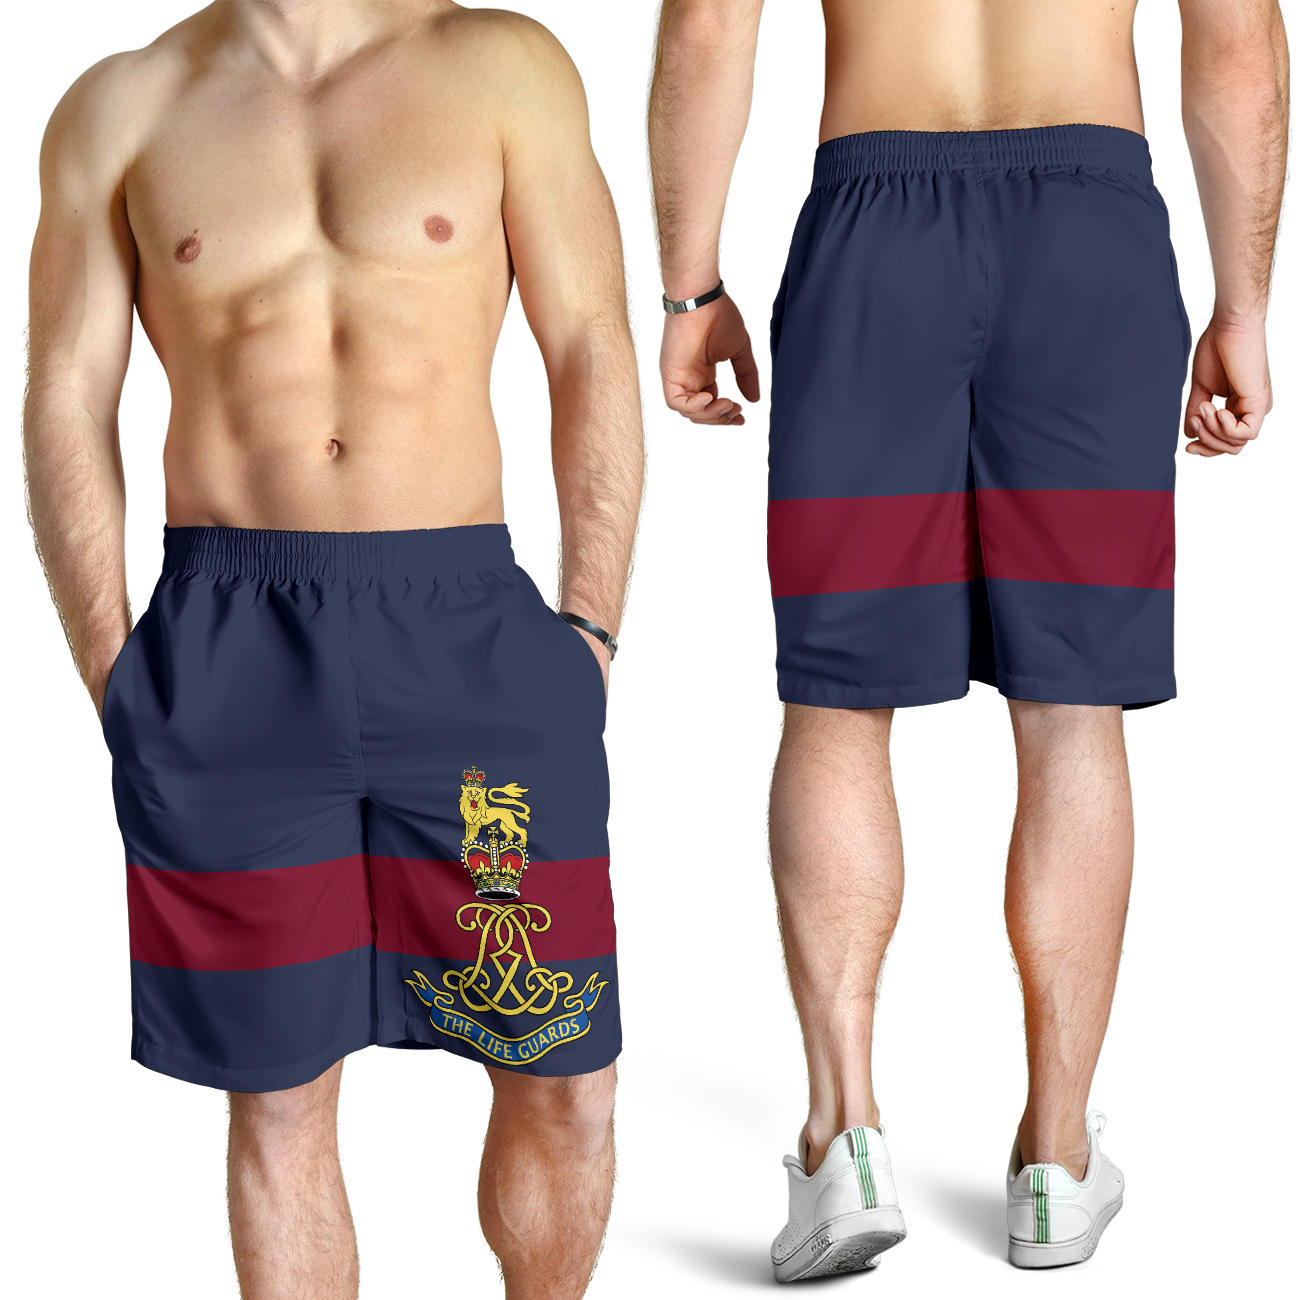 Life Guards Men's Shorts